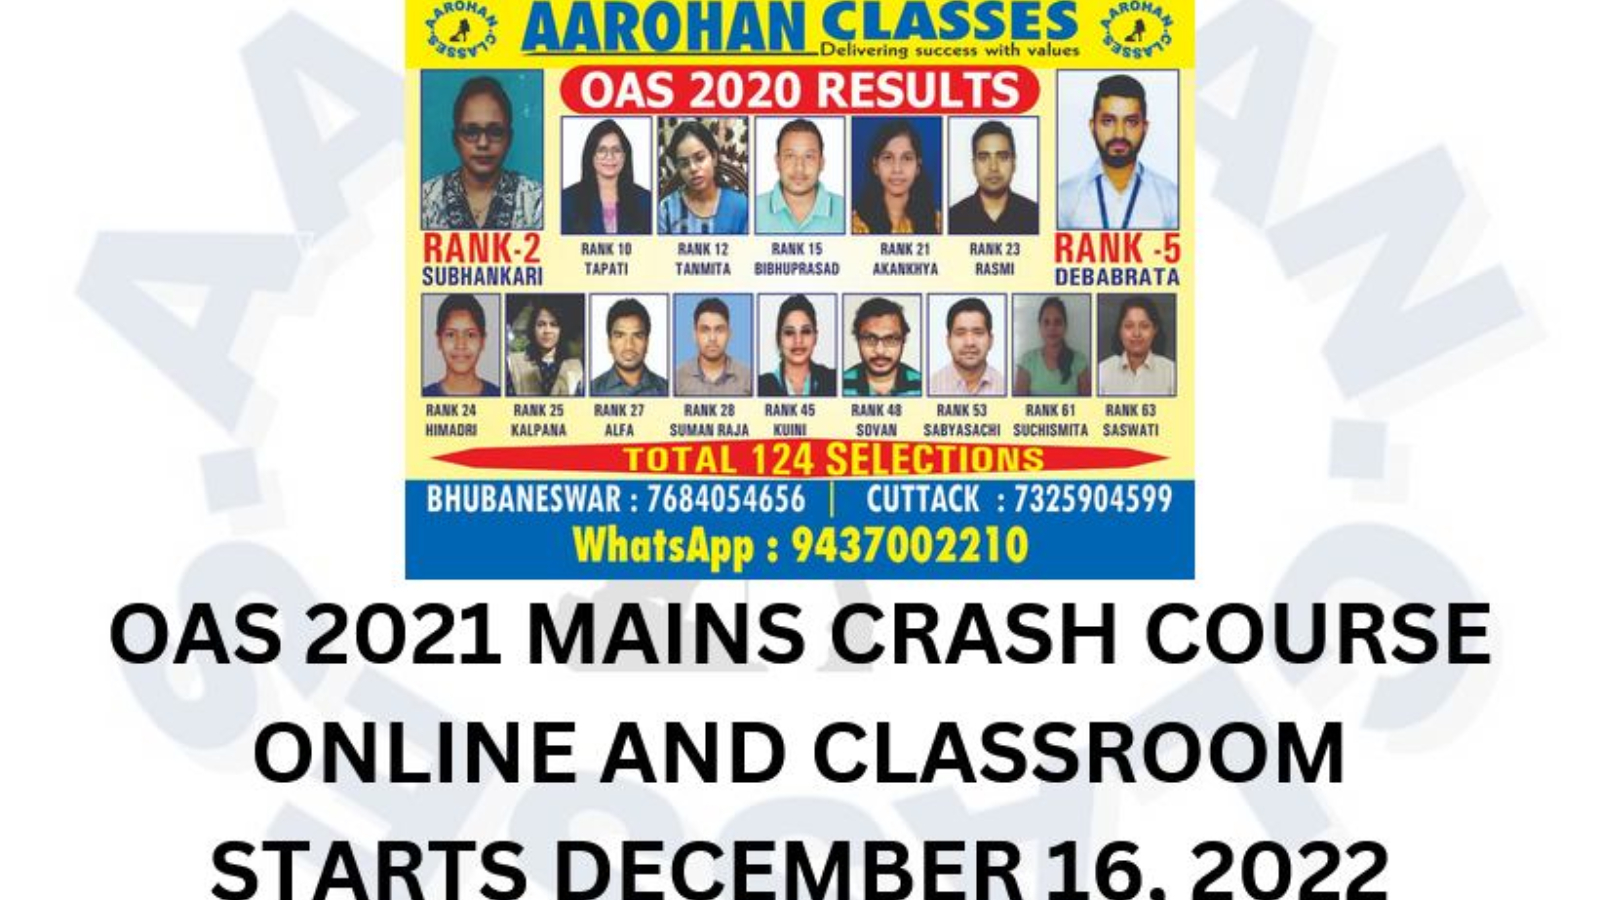 Aarohan Classes IAS Academy Bhubaneswar Hero Slider - 1